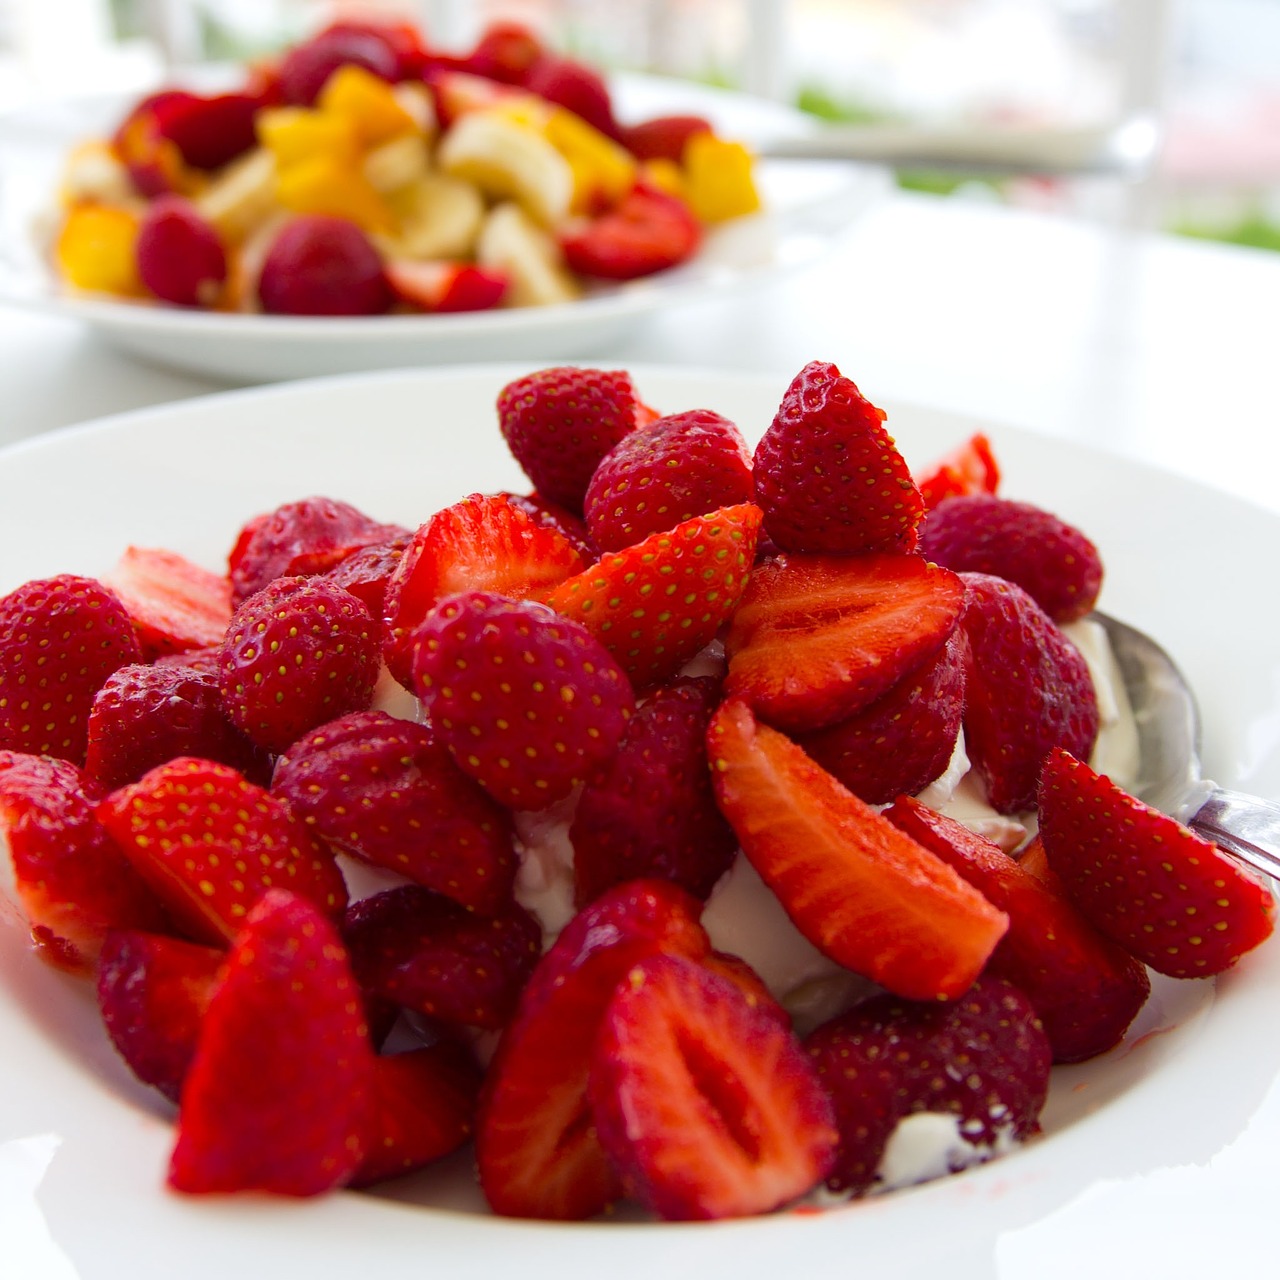 strawberries midsummer dessert free photo